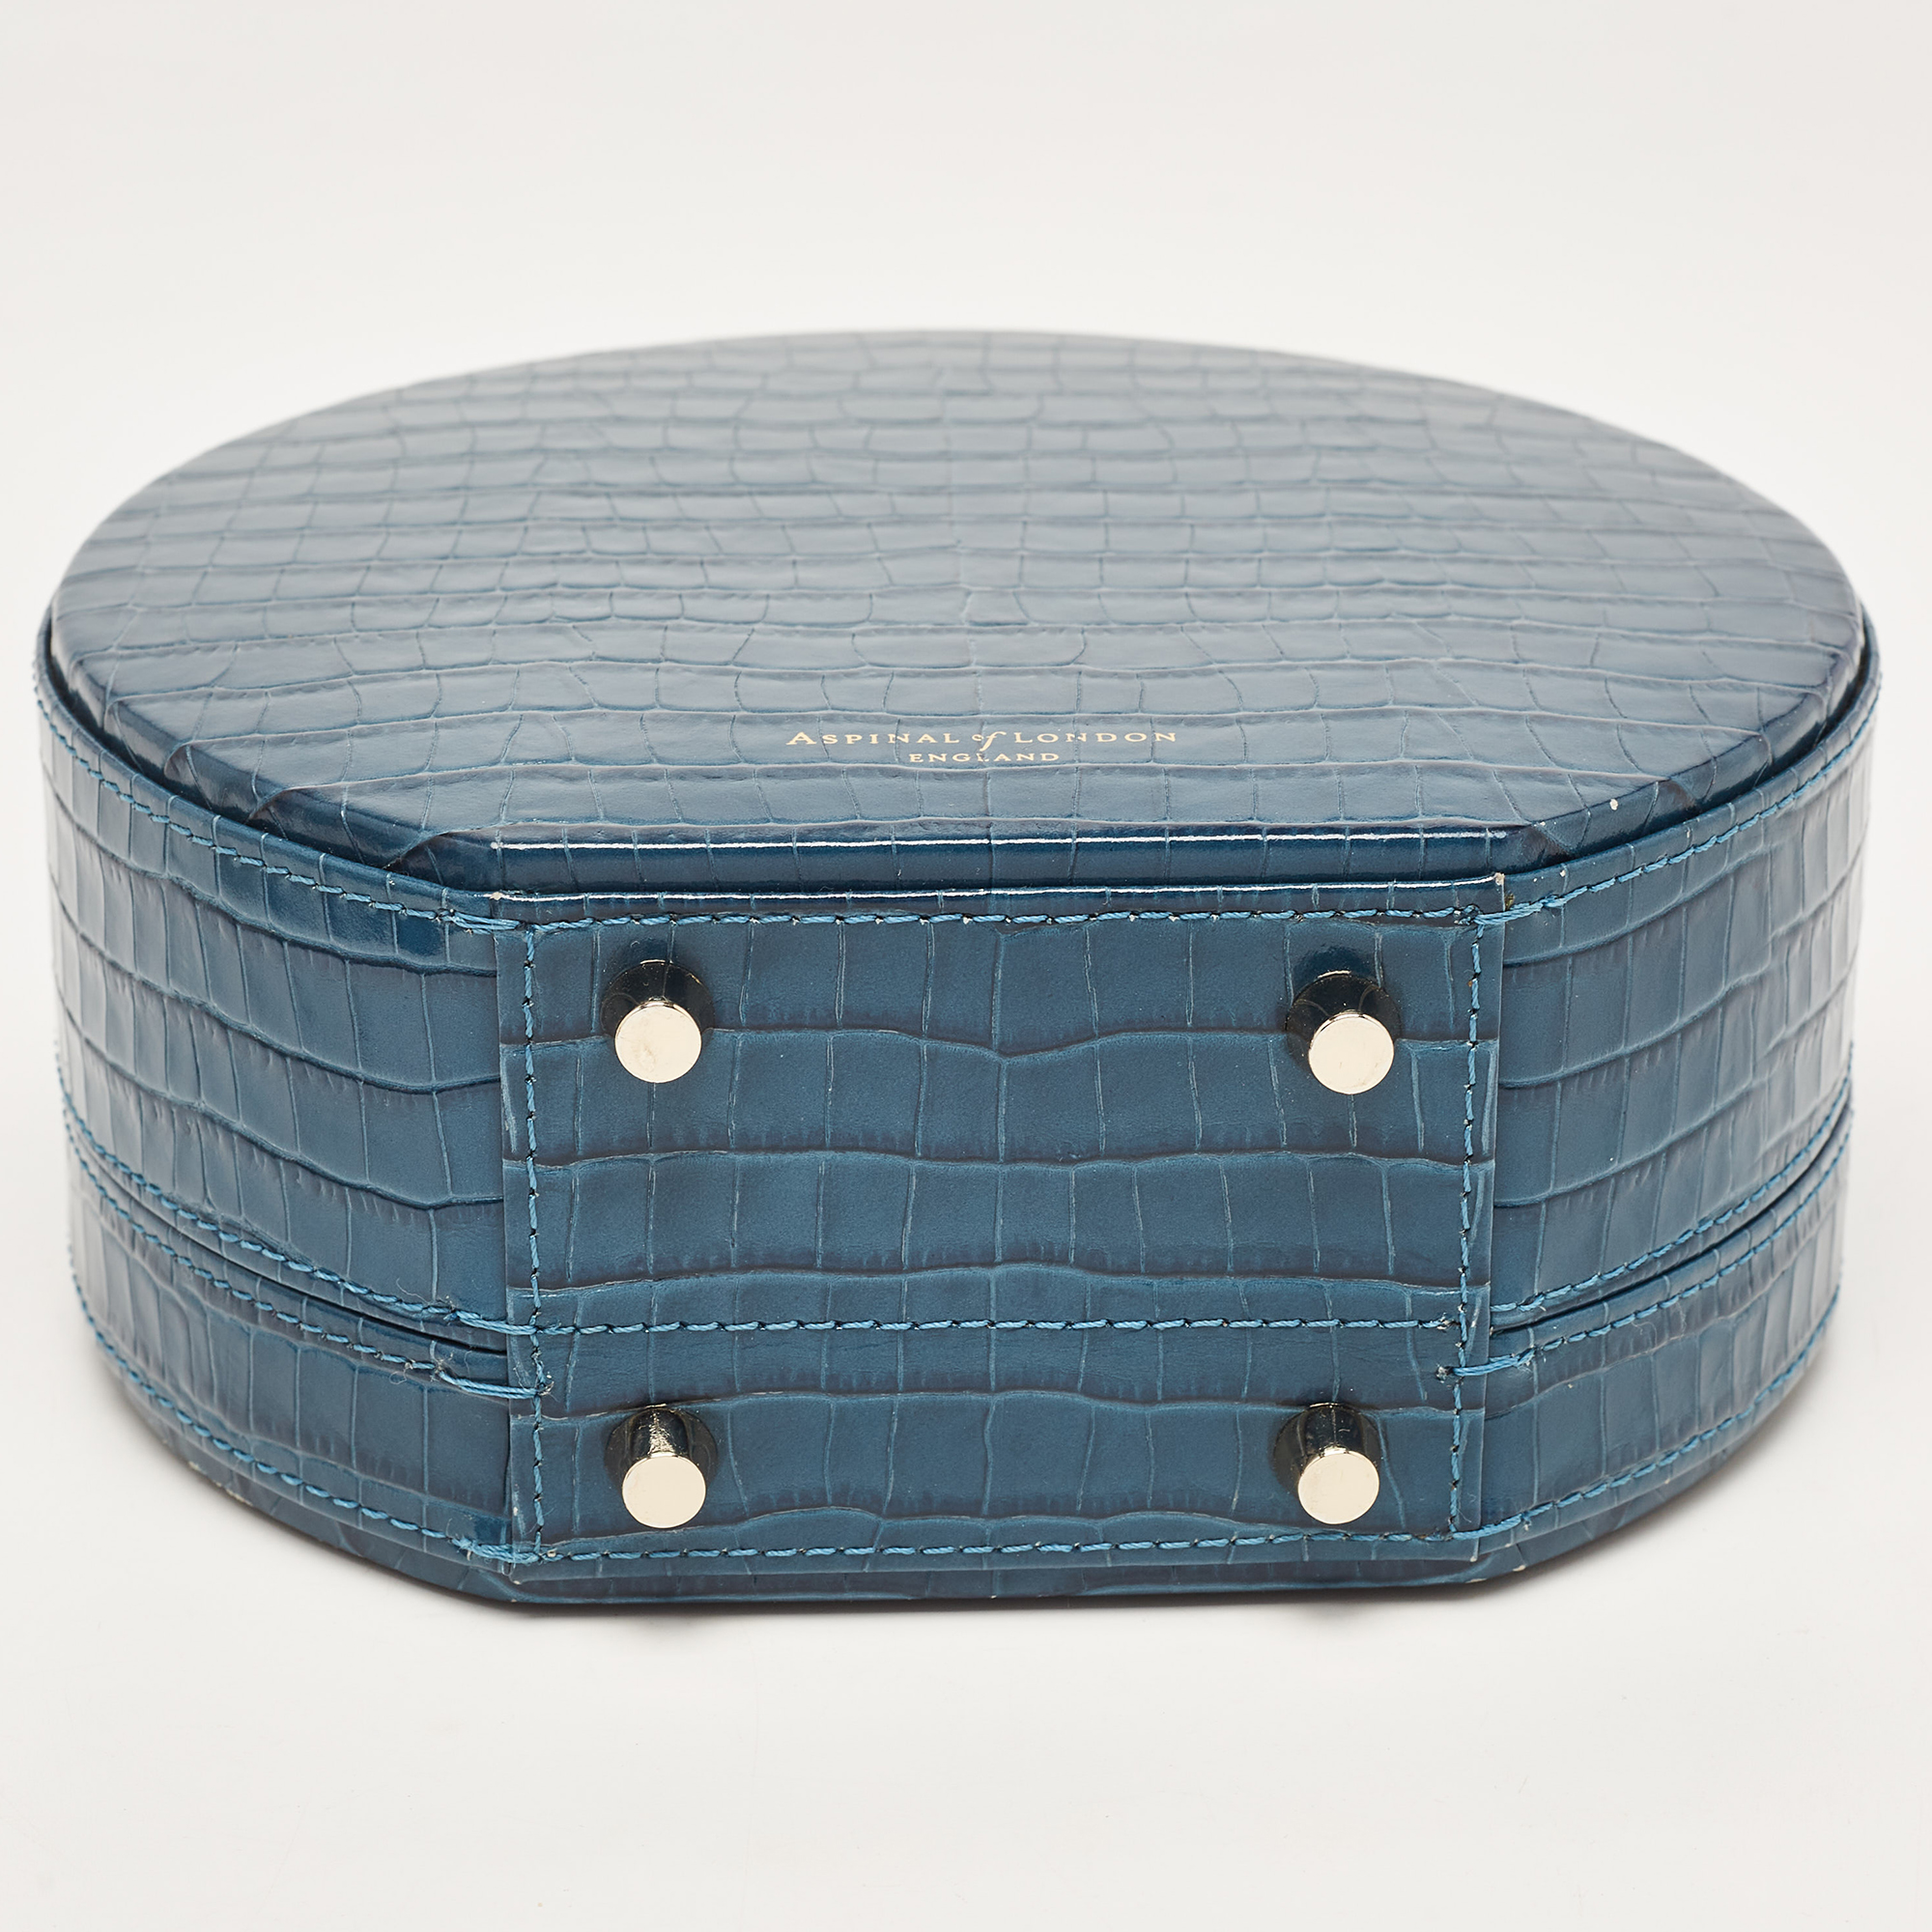 Aspinal Of London Teal Blue Croc Embossed Leather Hat Box Shoulder Bag